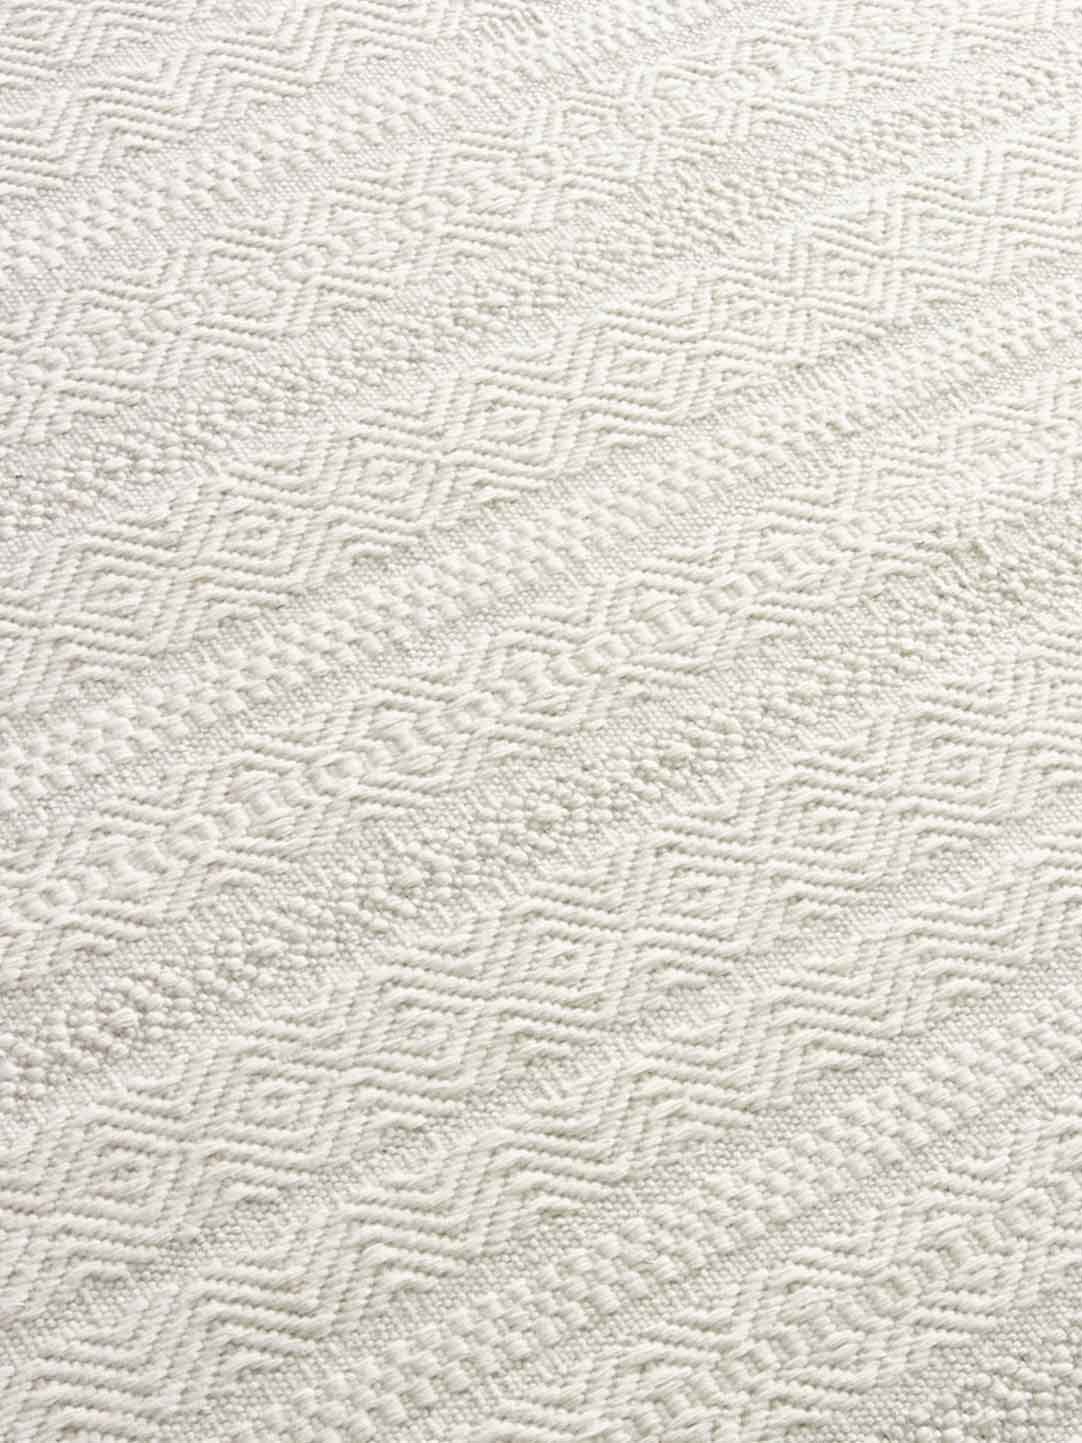 Silhouette flatweave rug detail